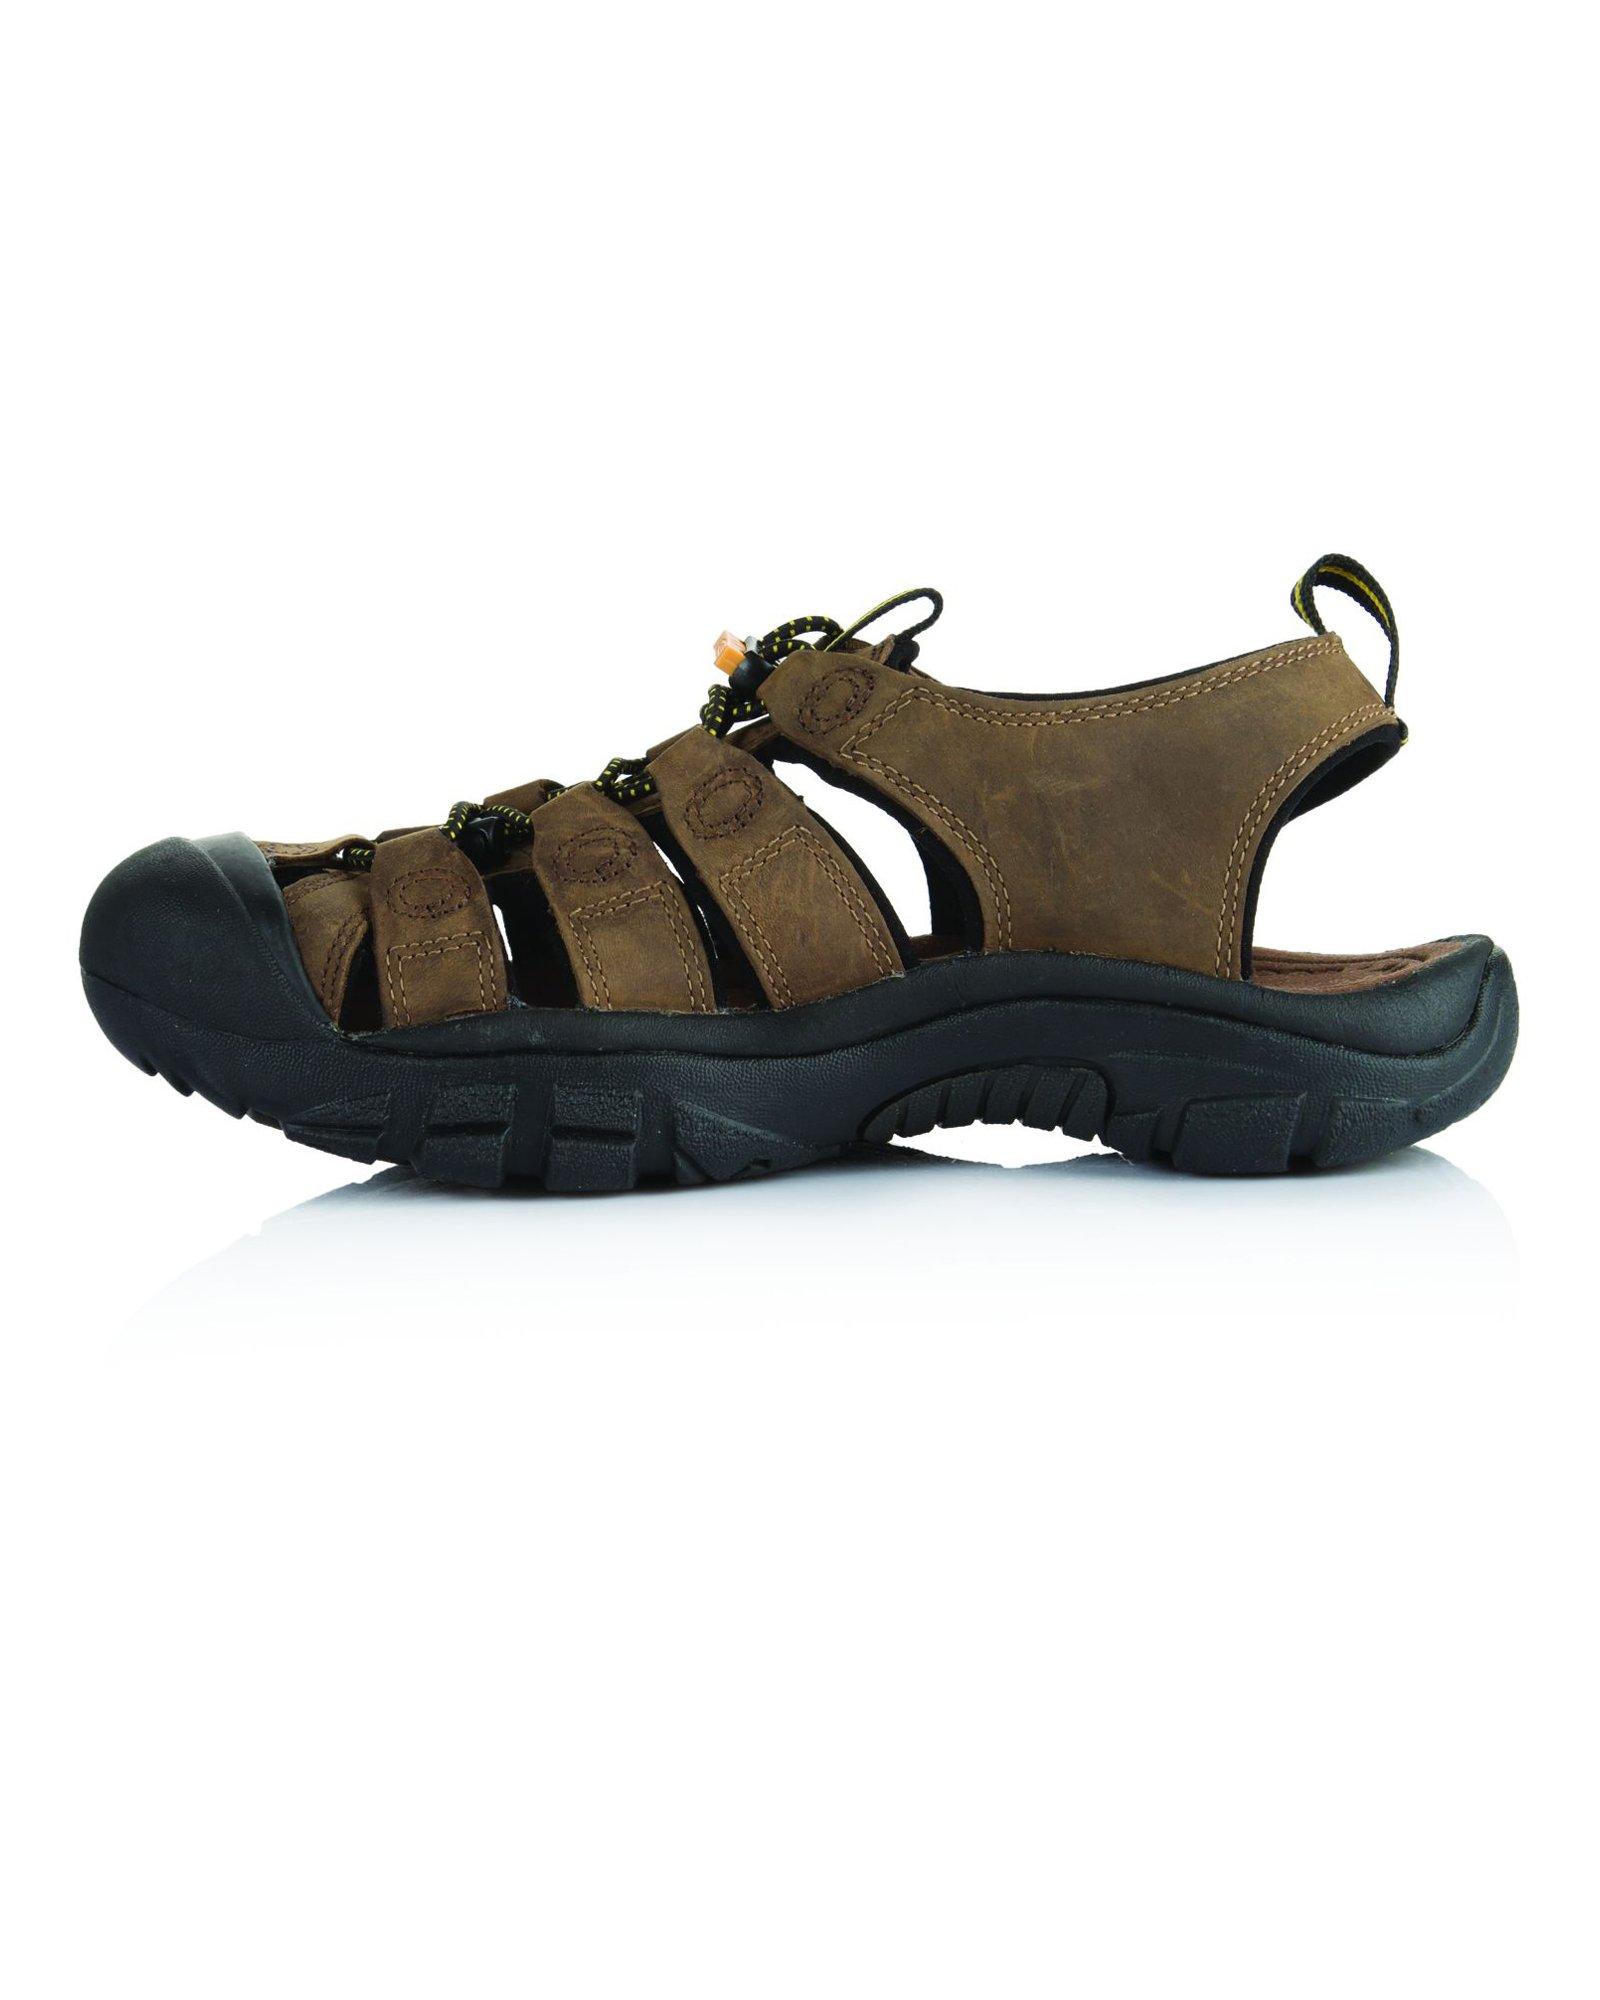 KEEN Men's Newport Leather Sandals